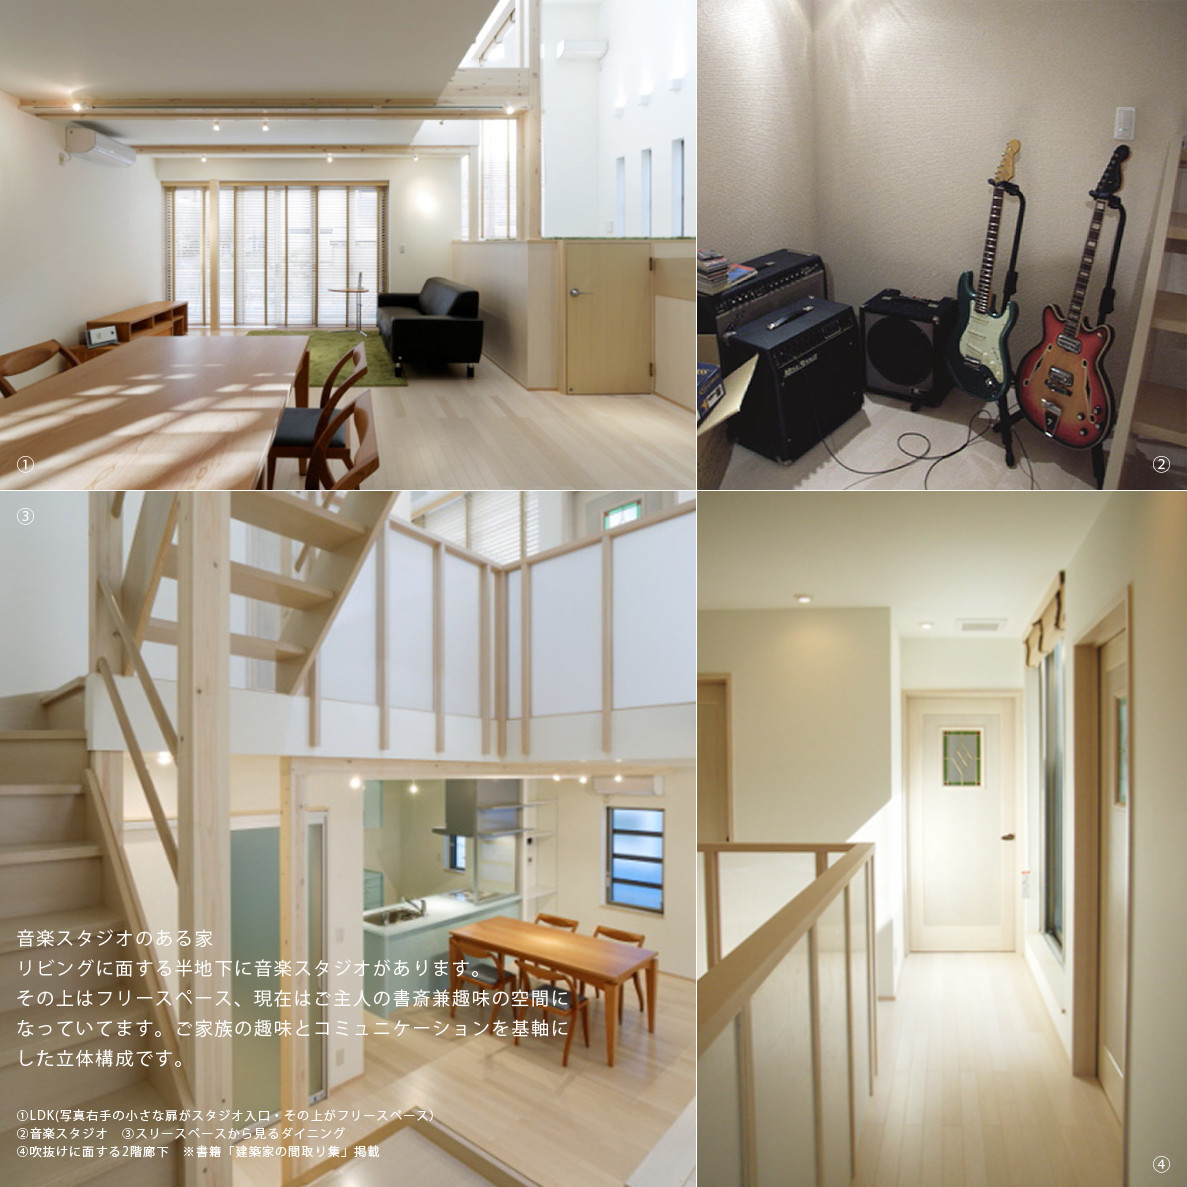 音楽スタジオのある家 有限会社 アトリエ アイズの建築事例 Sumika 建築家 工務店との家づくりを無料でサポート